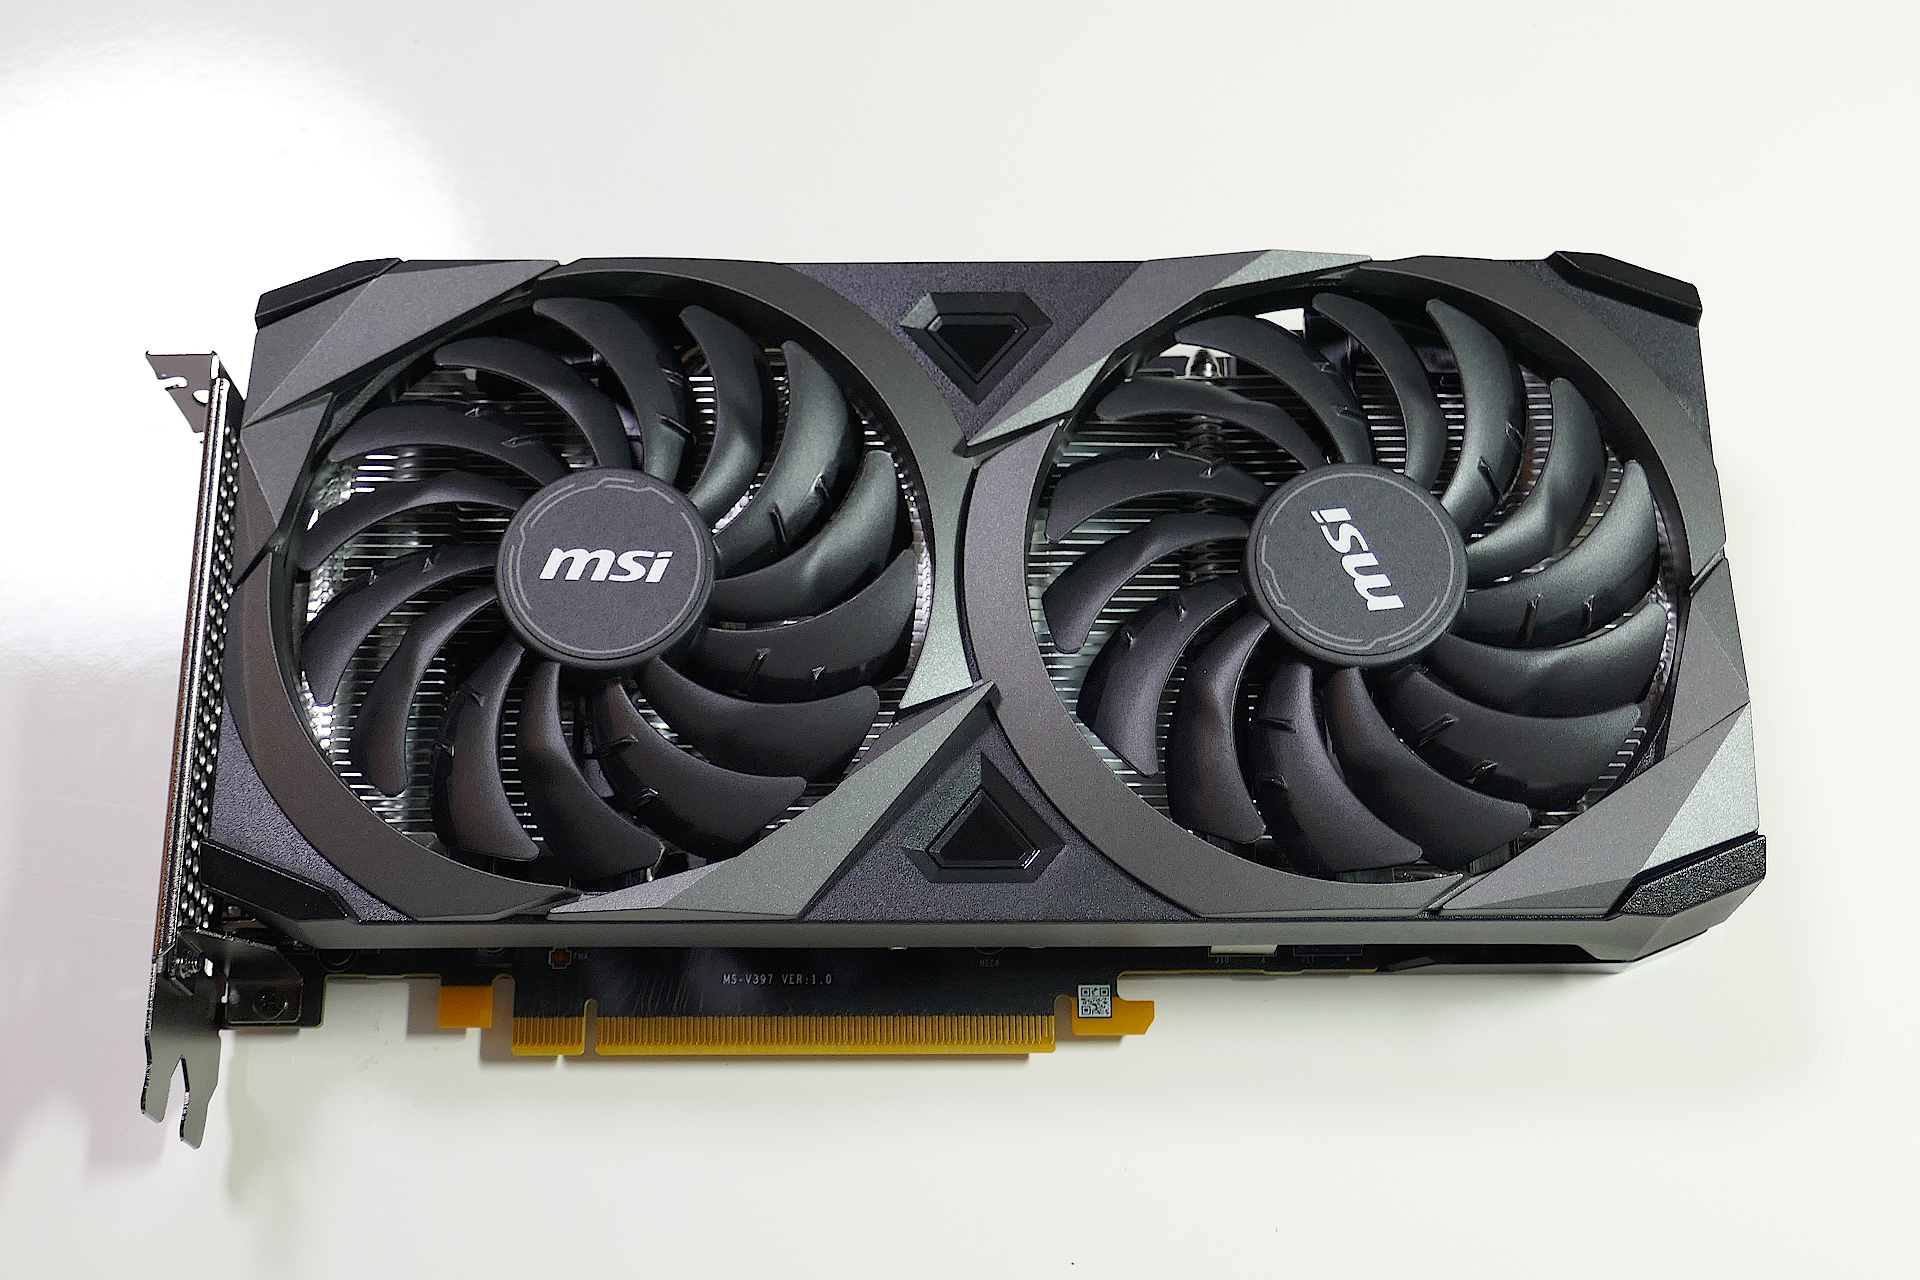 グラフィクス カードのMSI GeForce RTX 3060 VENTUS 2X 12G OCを正面上方から撮影した写真。 黒色のシェルに多数のブレードが有る2基のファンが搭載されている。